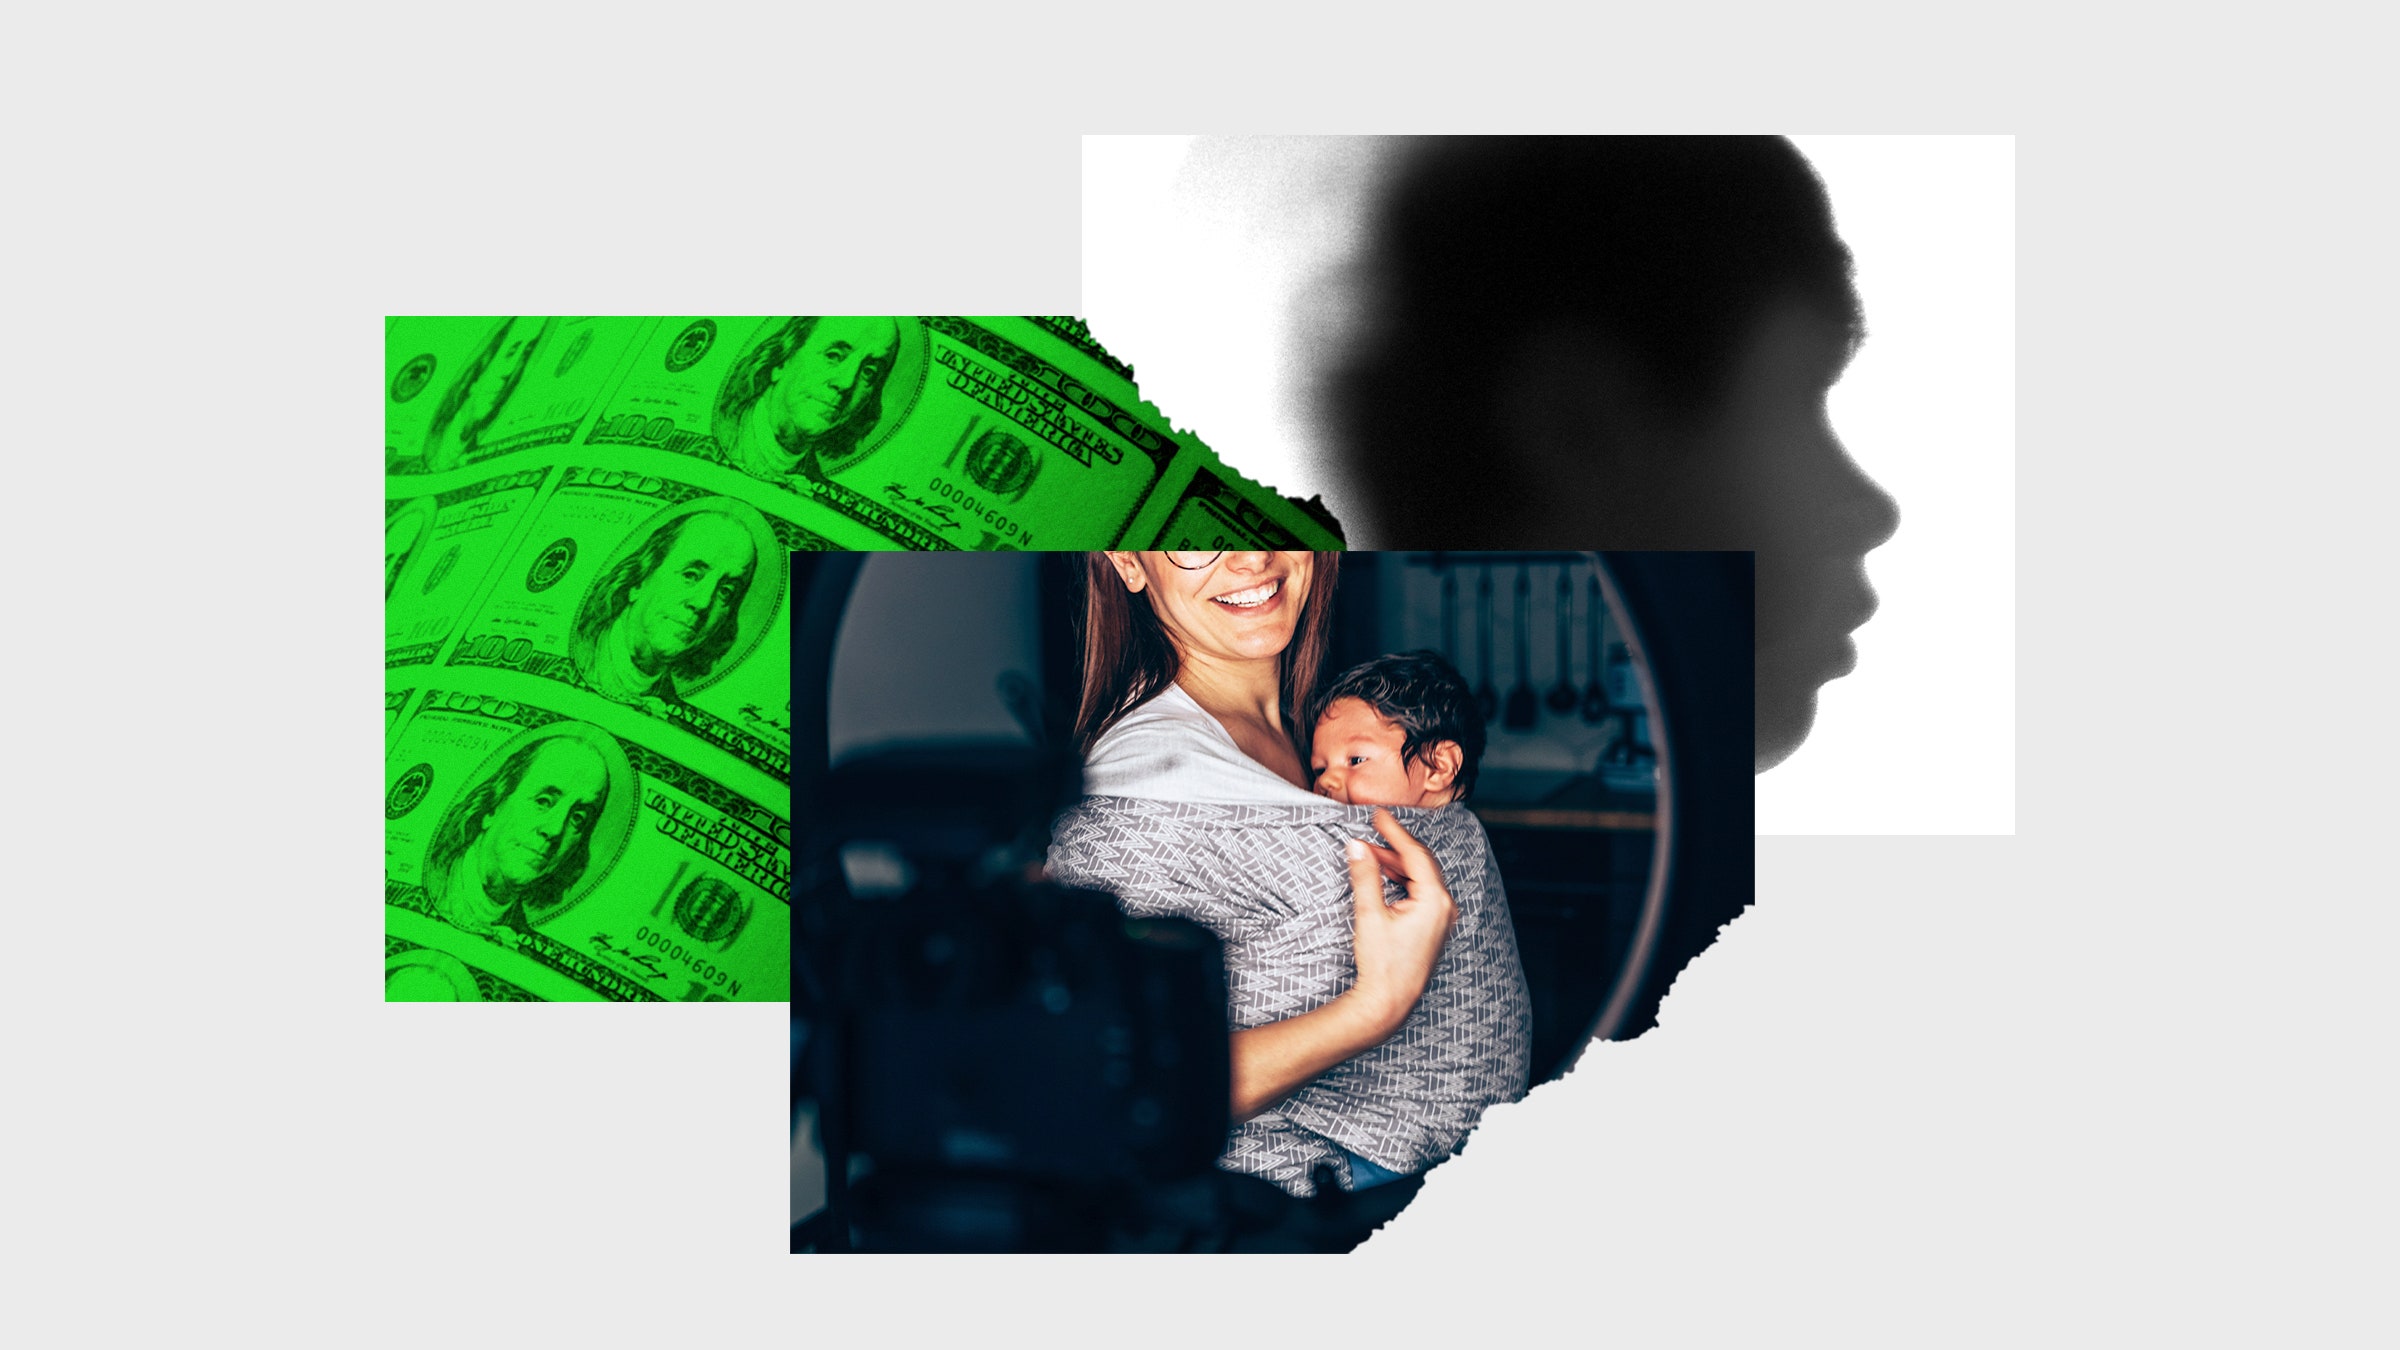 Colagem de fotos de um homem tirando uma foto de si mesmo com dinheiro para seu filho e um perfil desfocado da criança